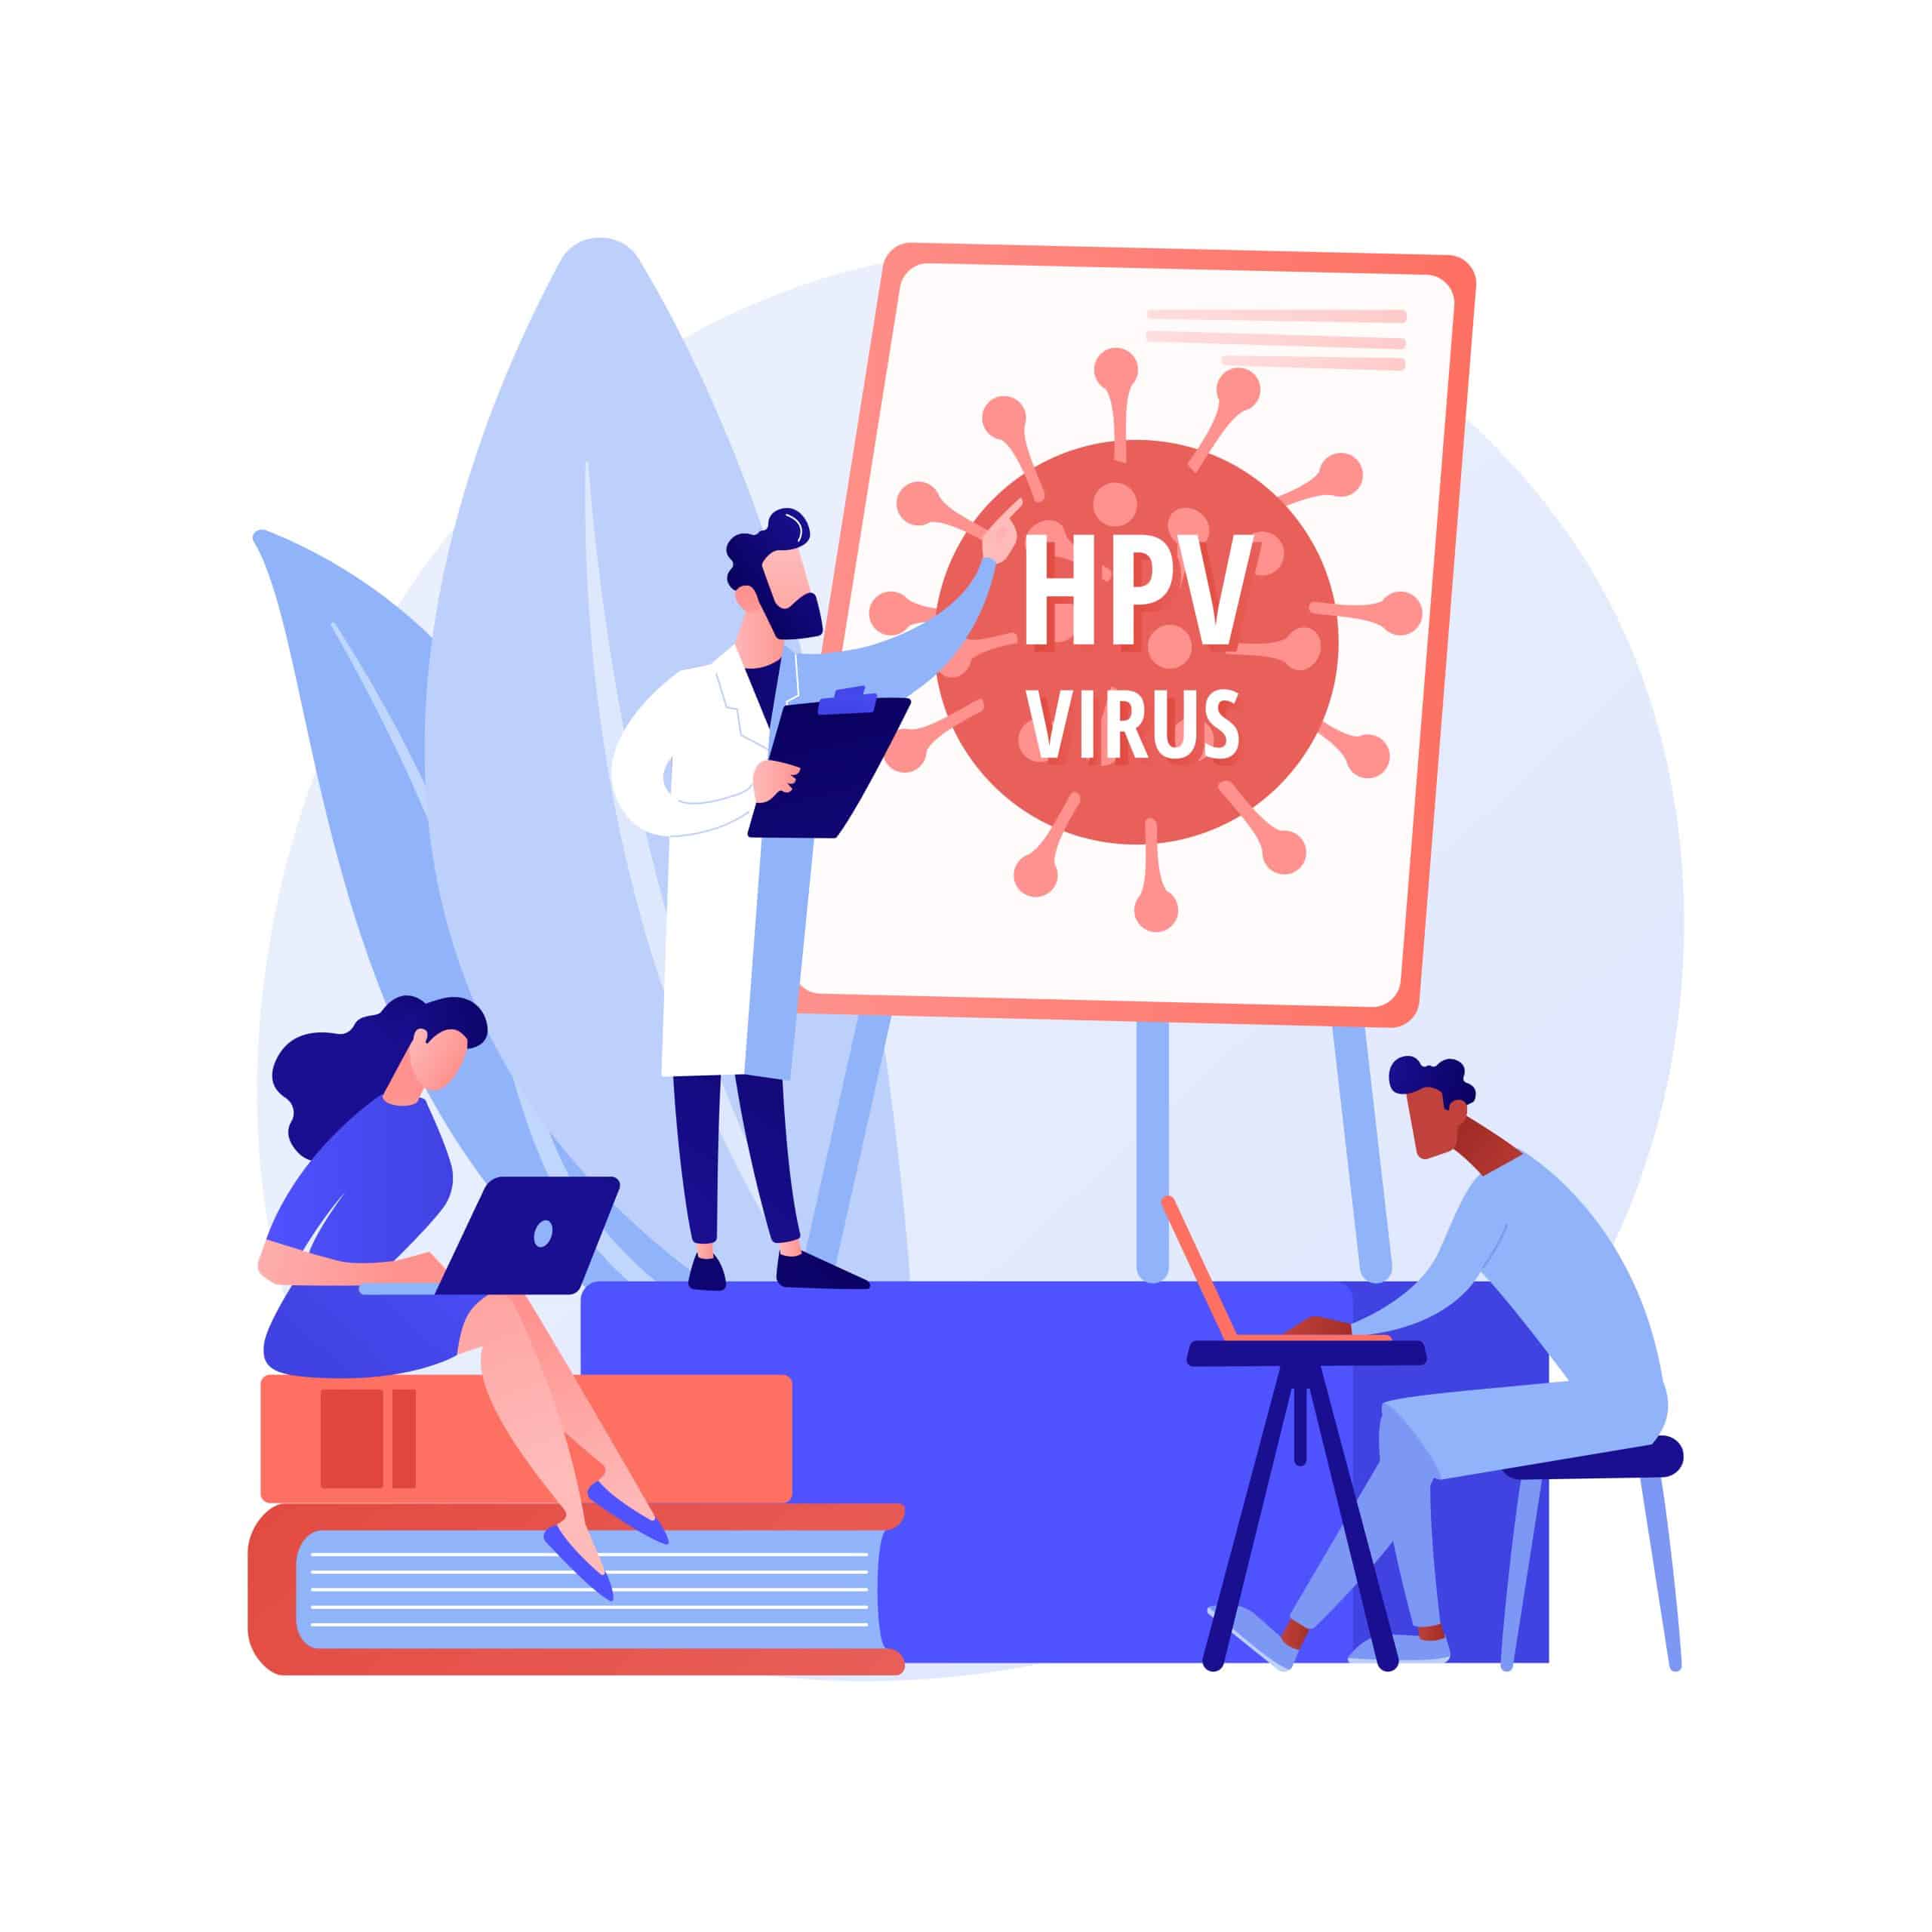 Quiz virus HPV